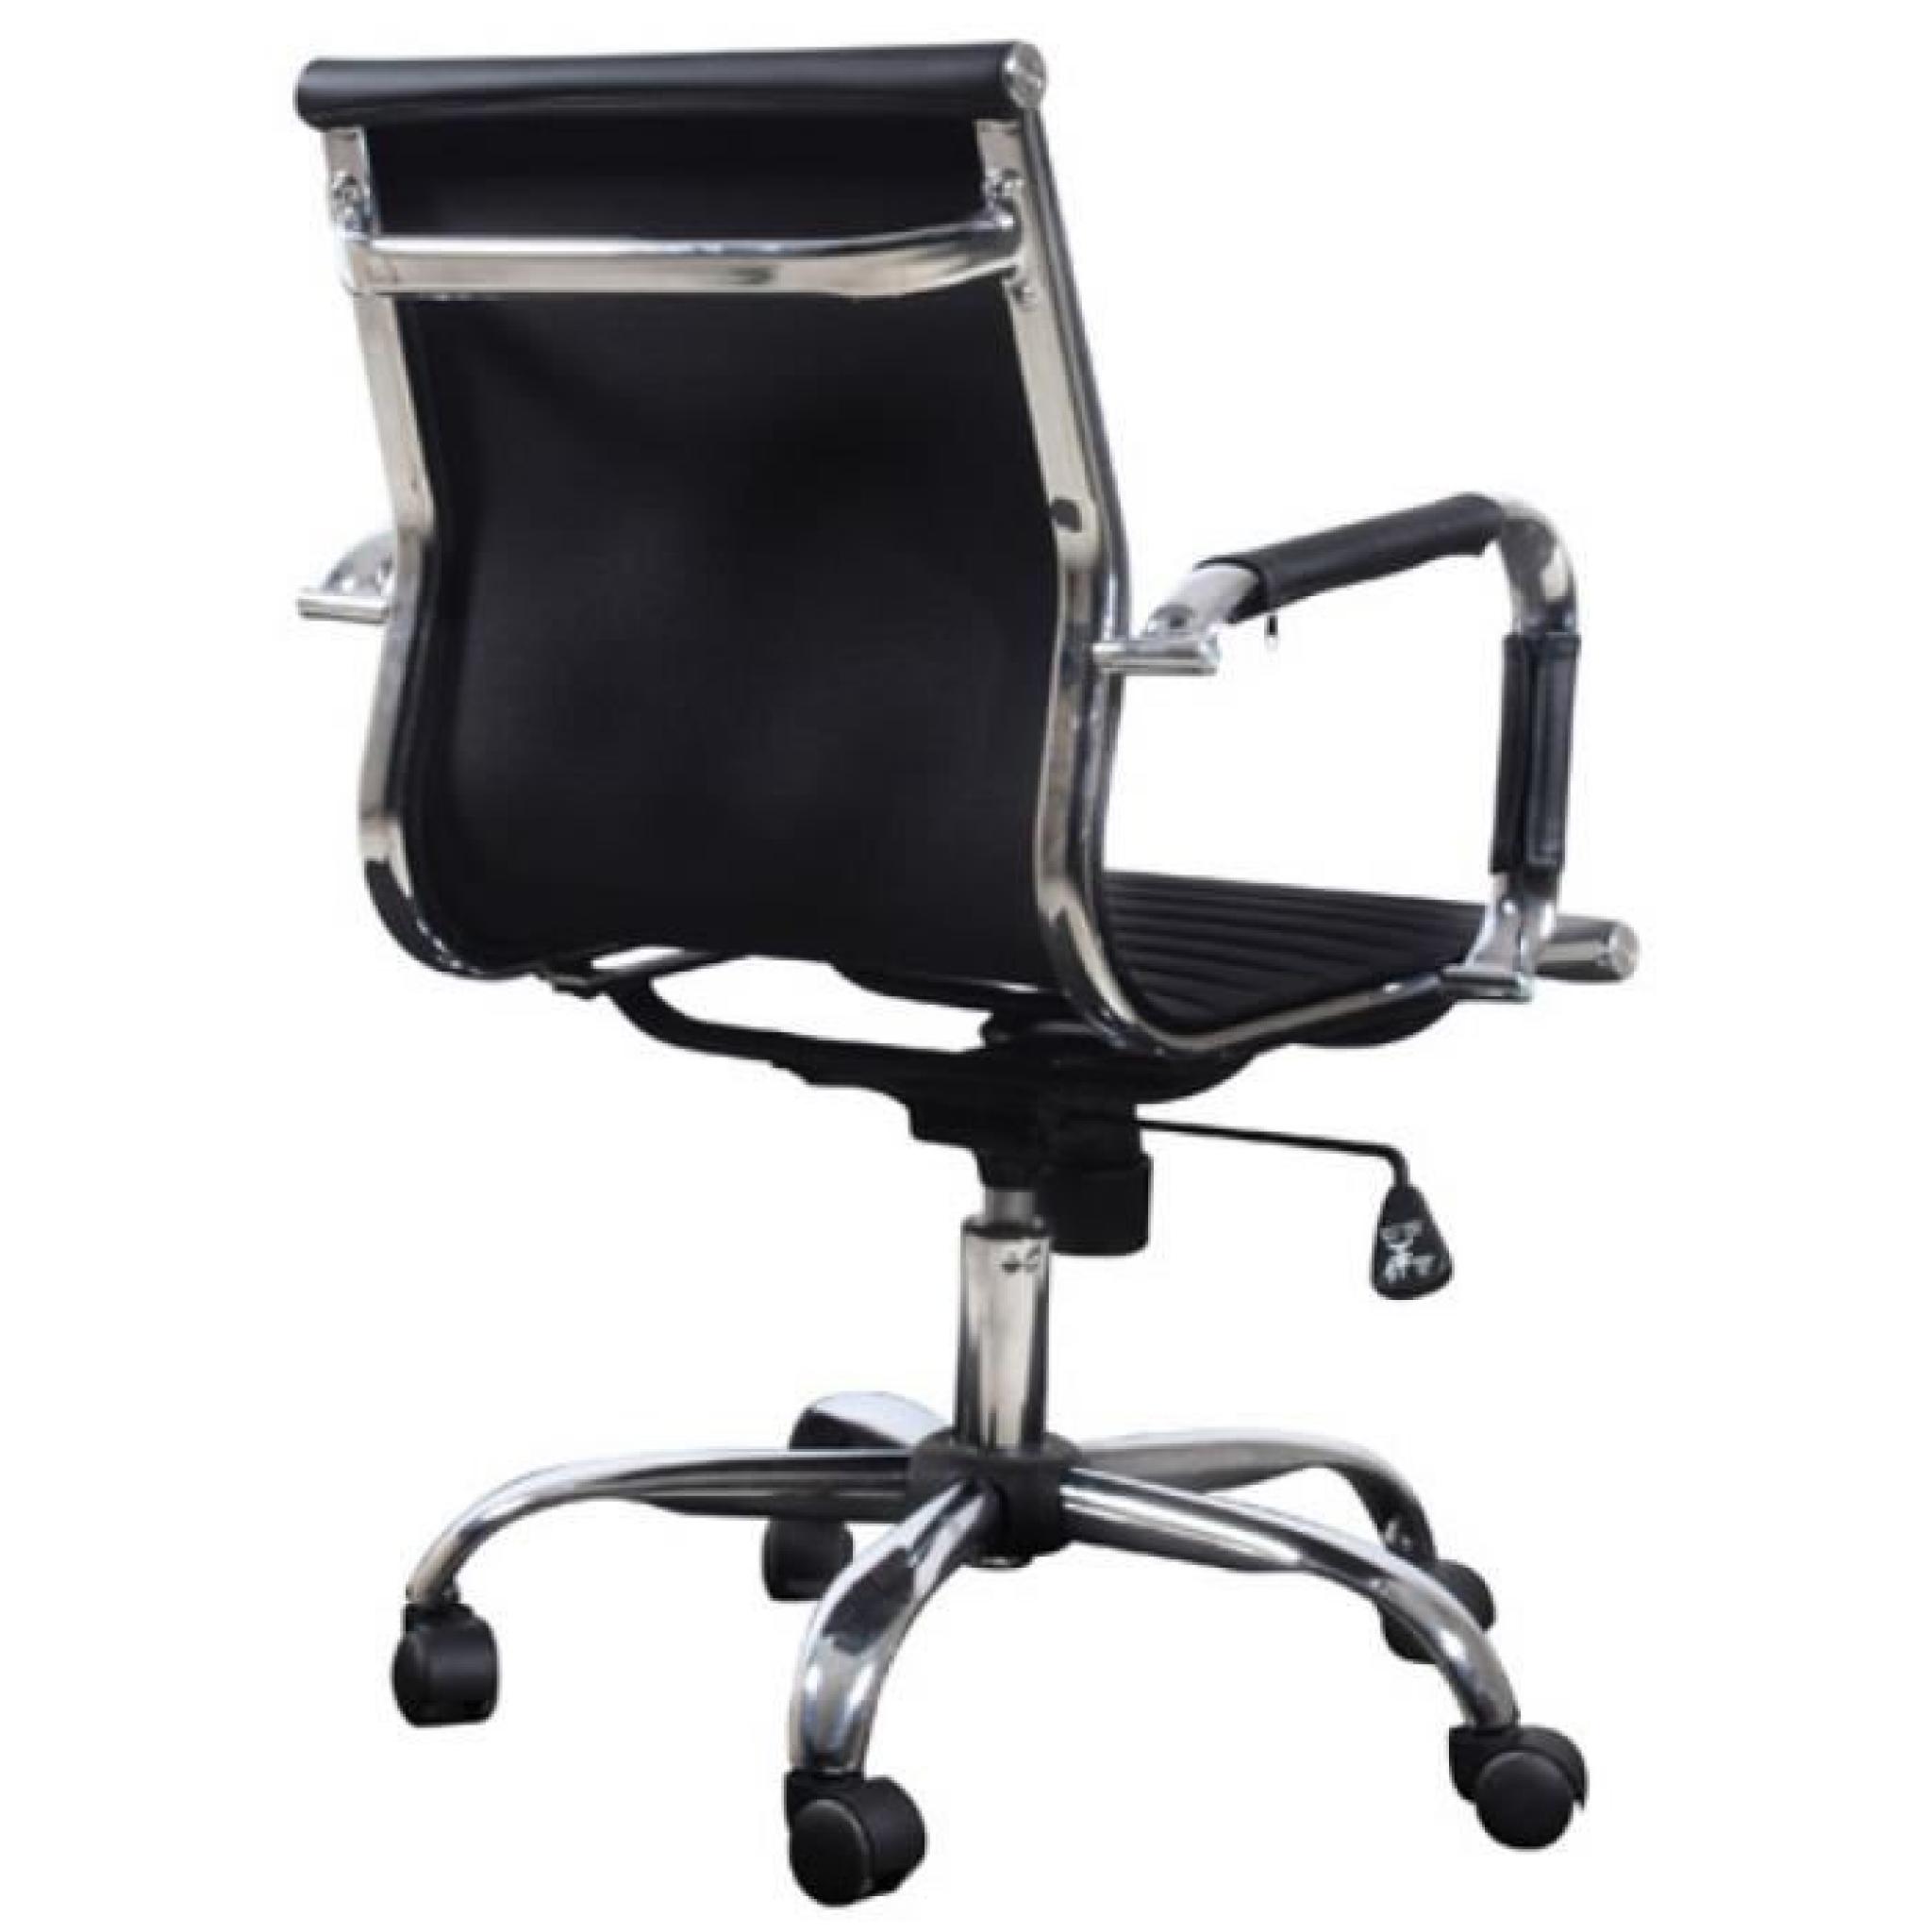 Chaise de bureau moderne simili cuir noir pas cher